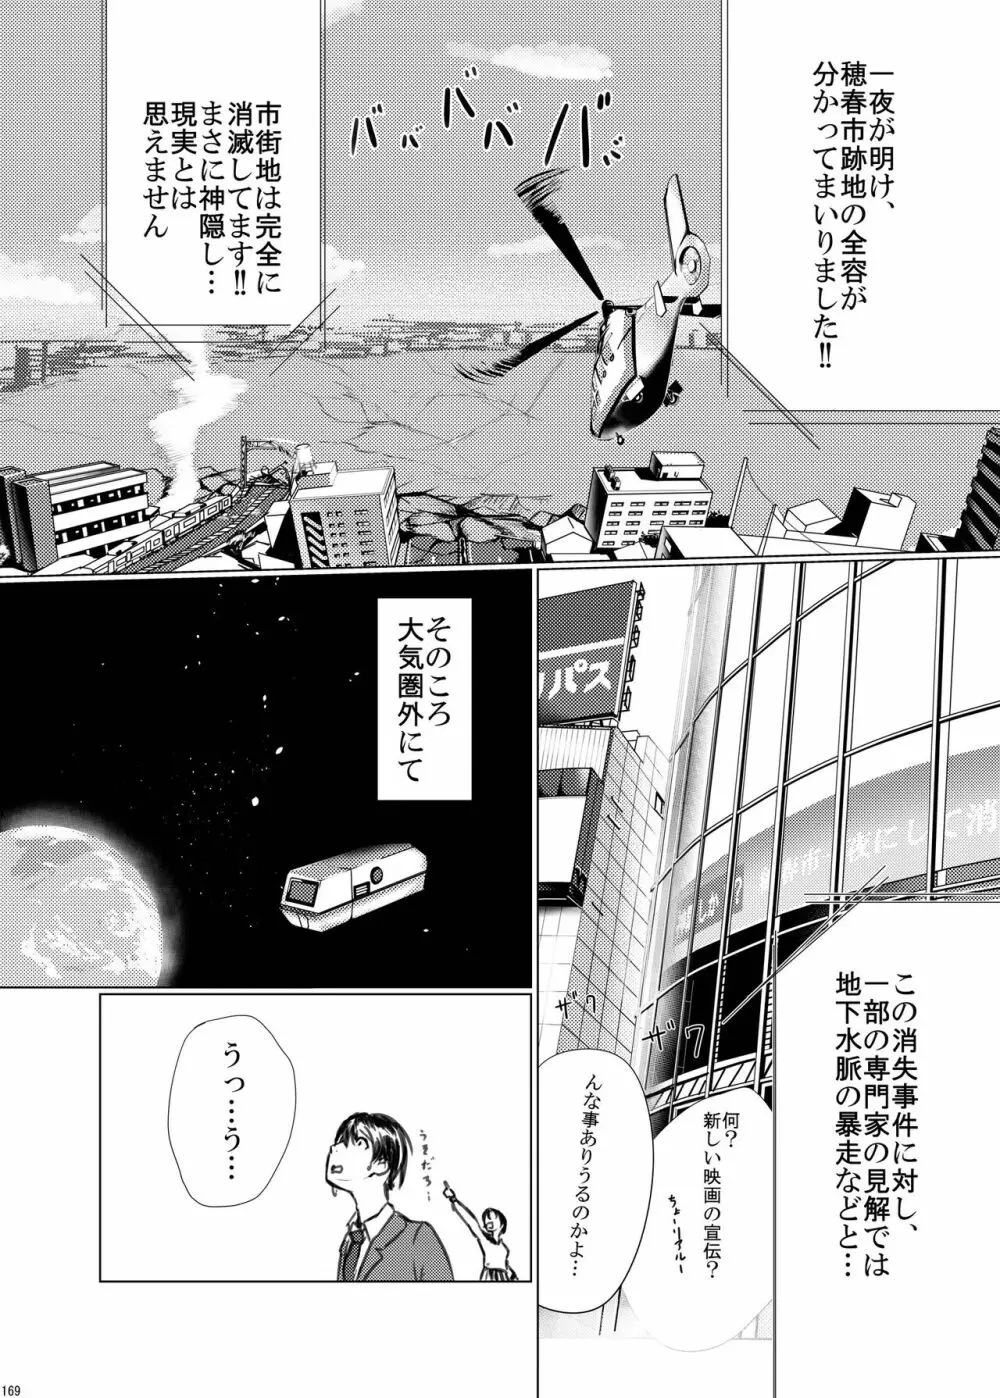 宇宙人・巨女/サイズ差合同誌 総動員!!デラックス増刊号 168ページ